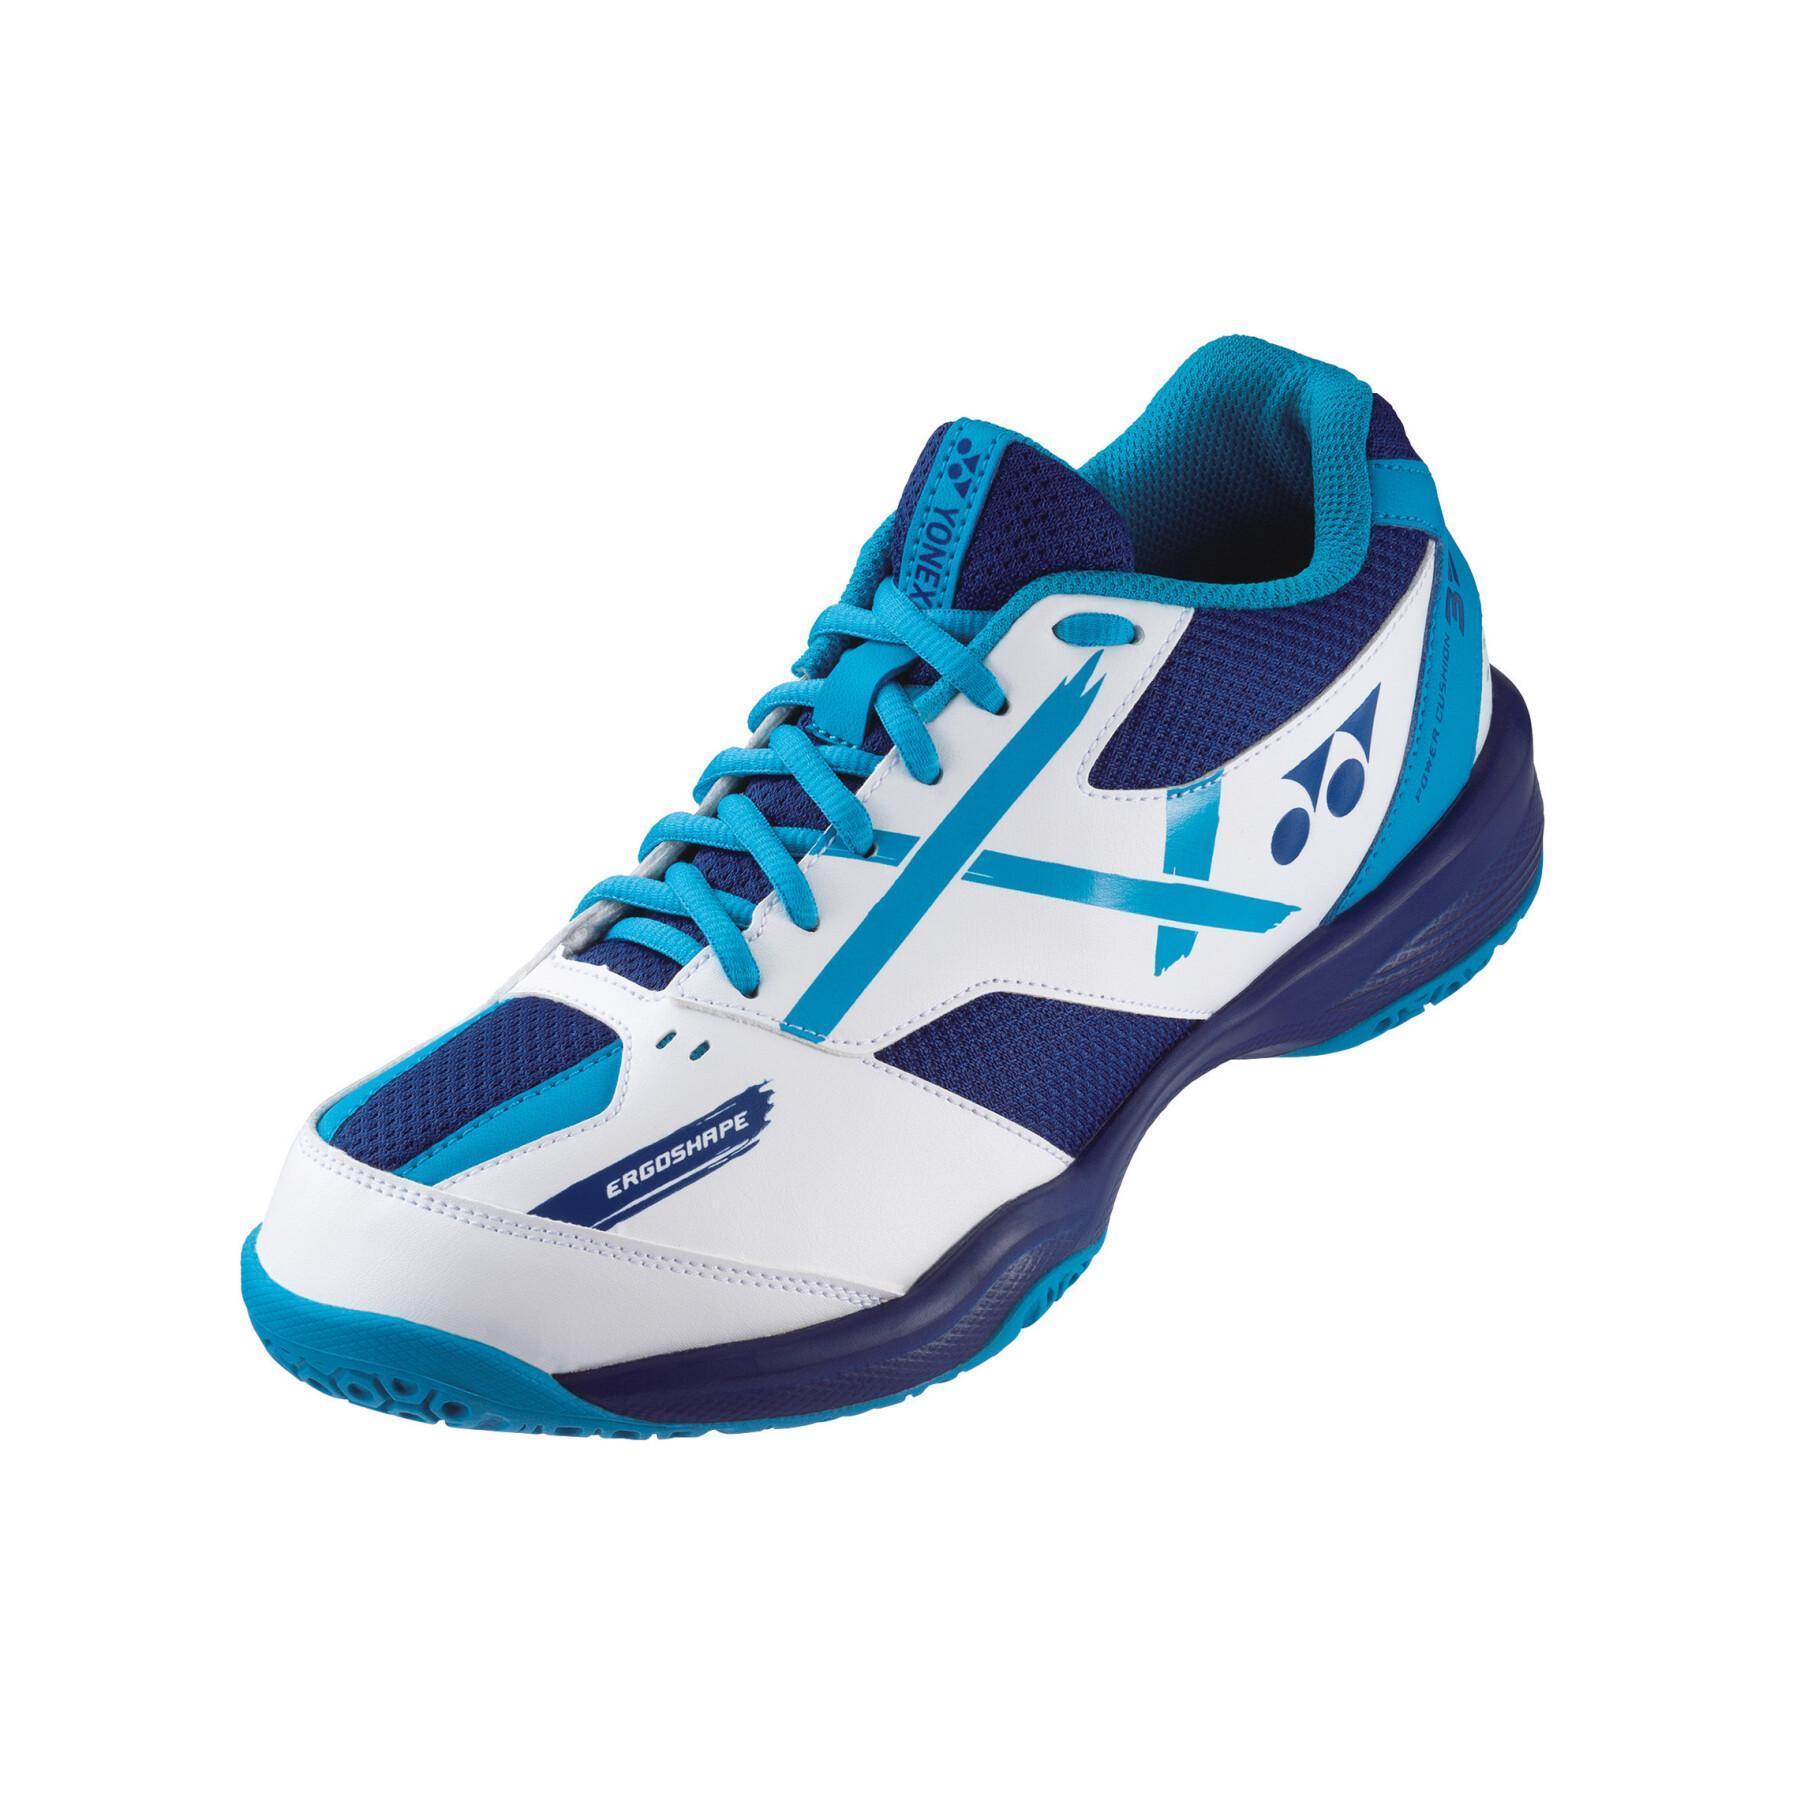 Sapatos Badminton Yonex PC 39